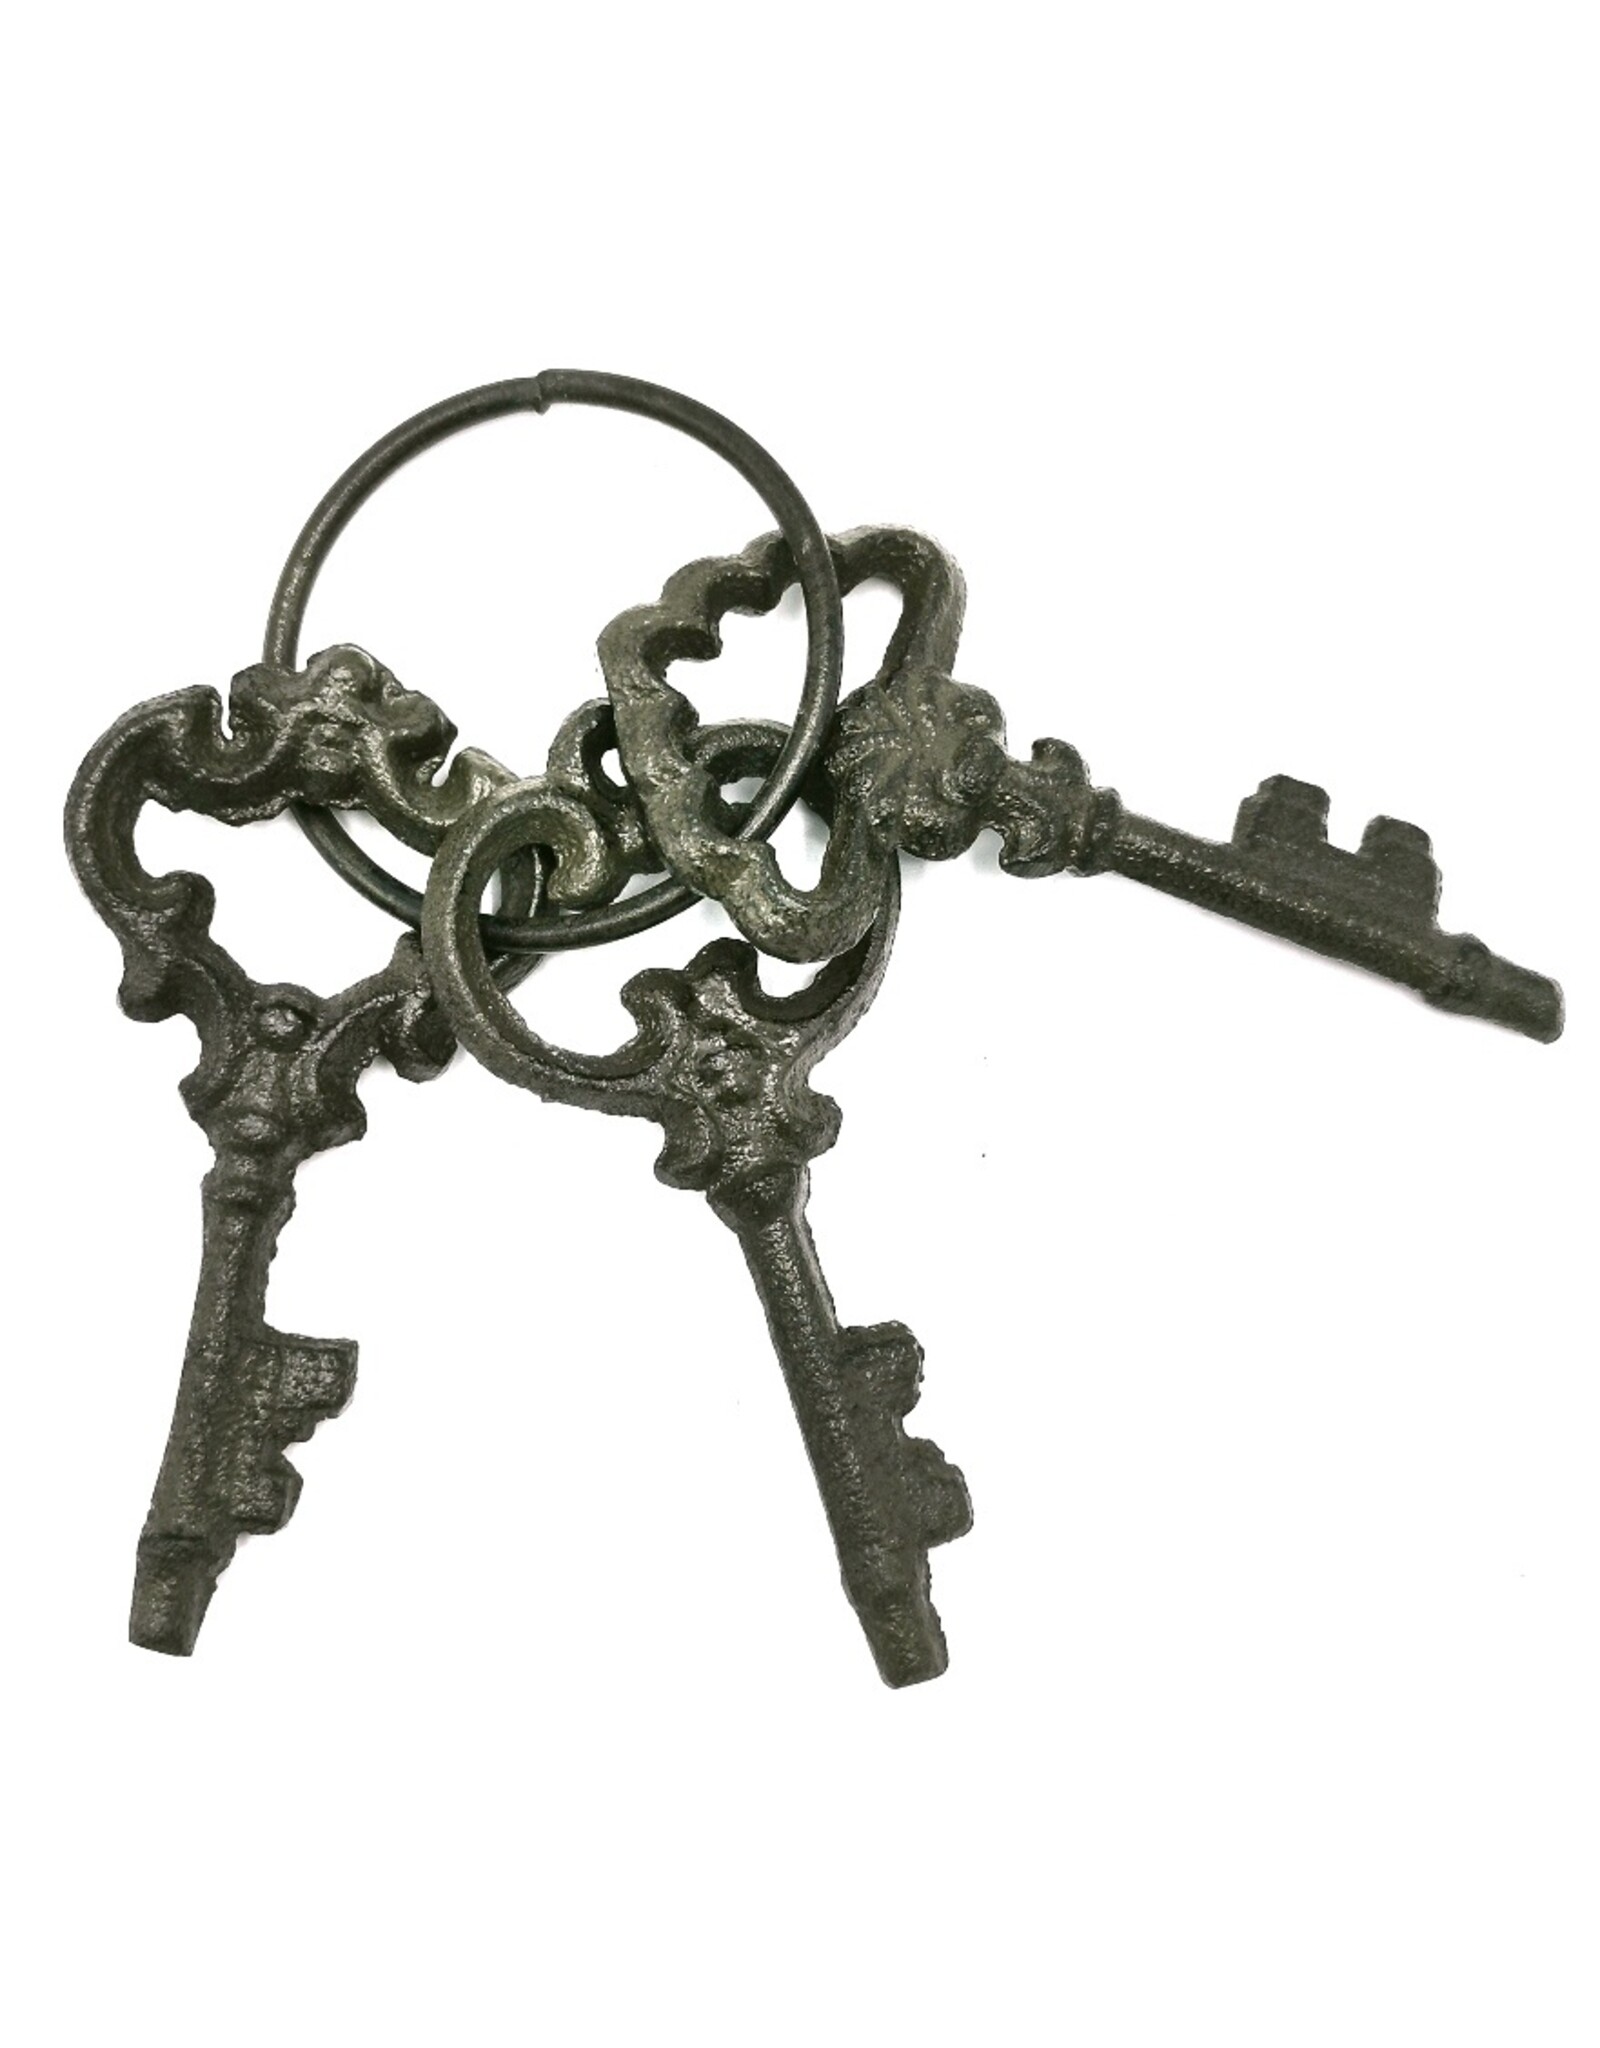 Trukado Giftware & Lifestyle - Antique look keys set 3 pieces - cast iron 11cm